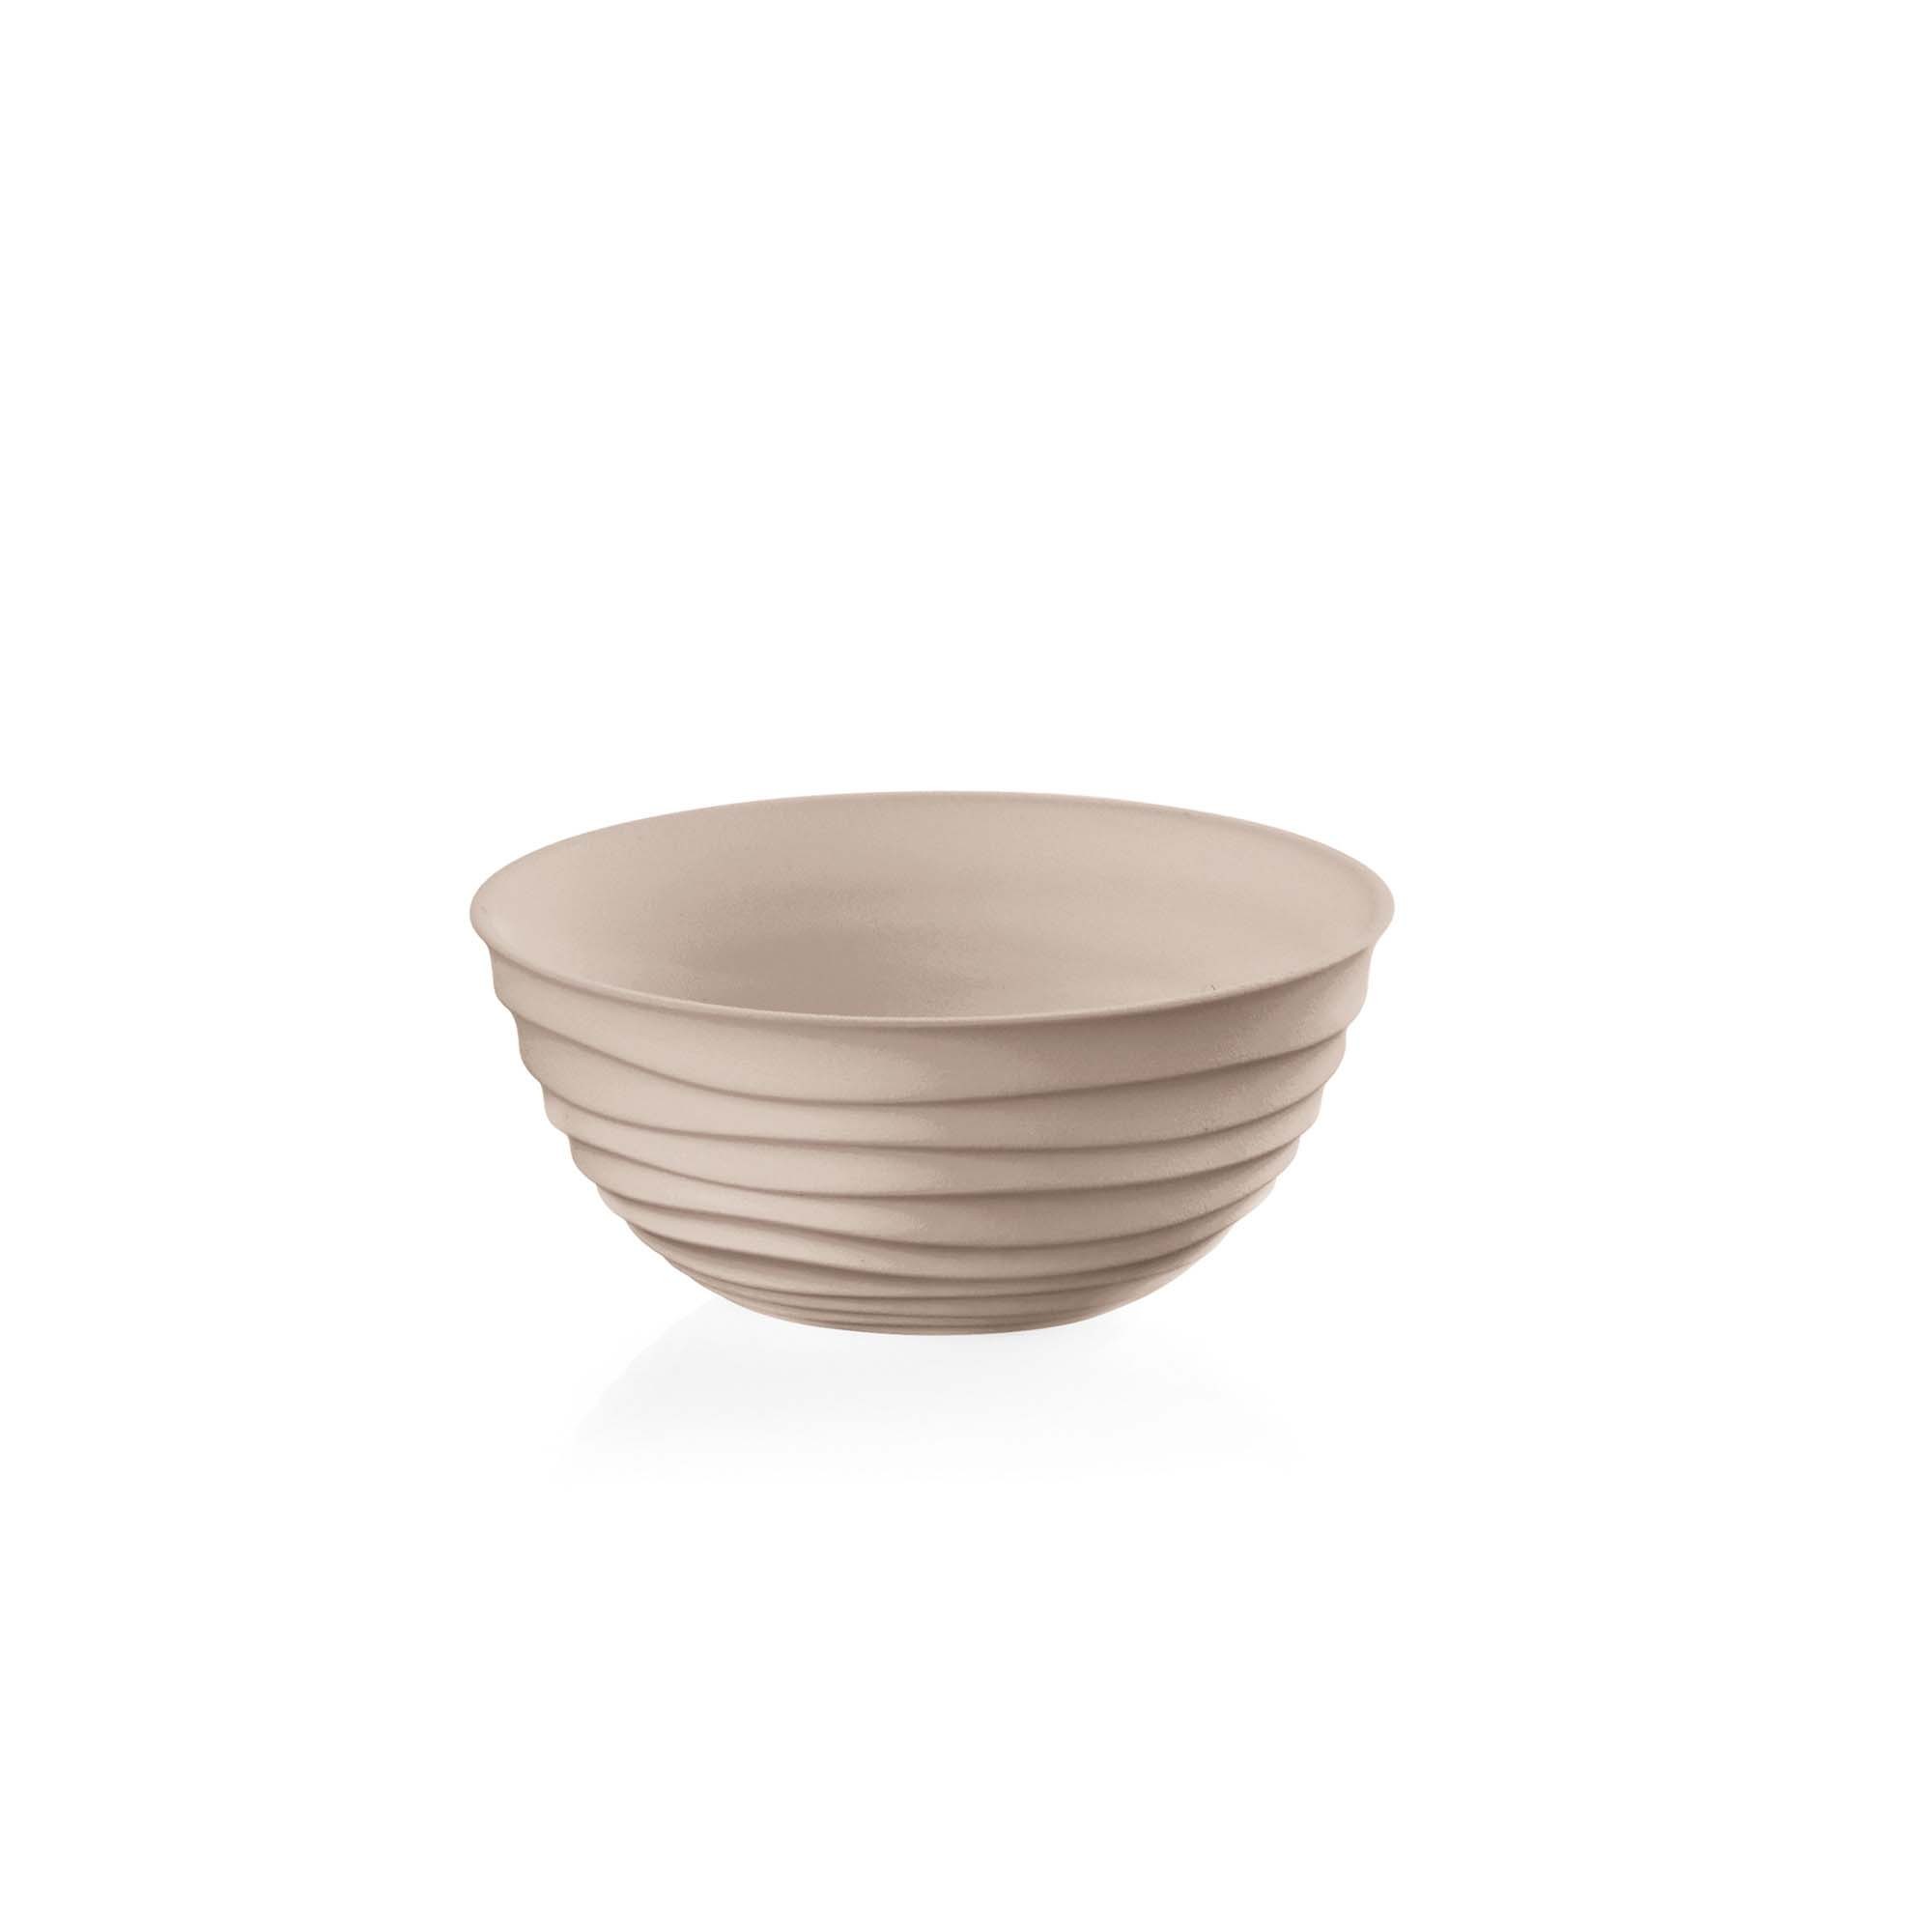 Small bowl guzzini Tierra collection 175012158 tortora